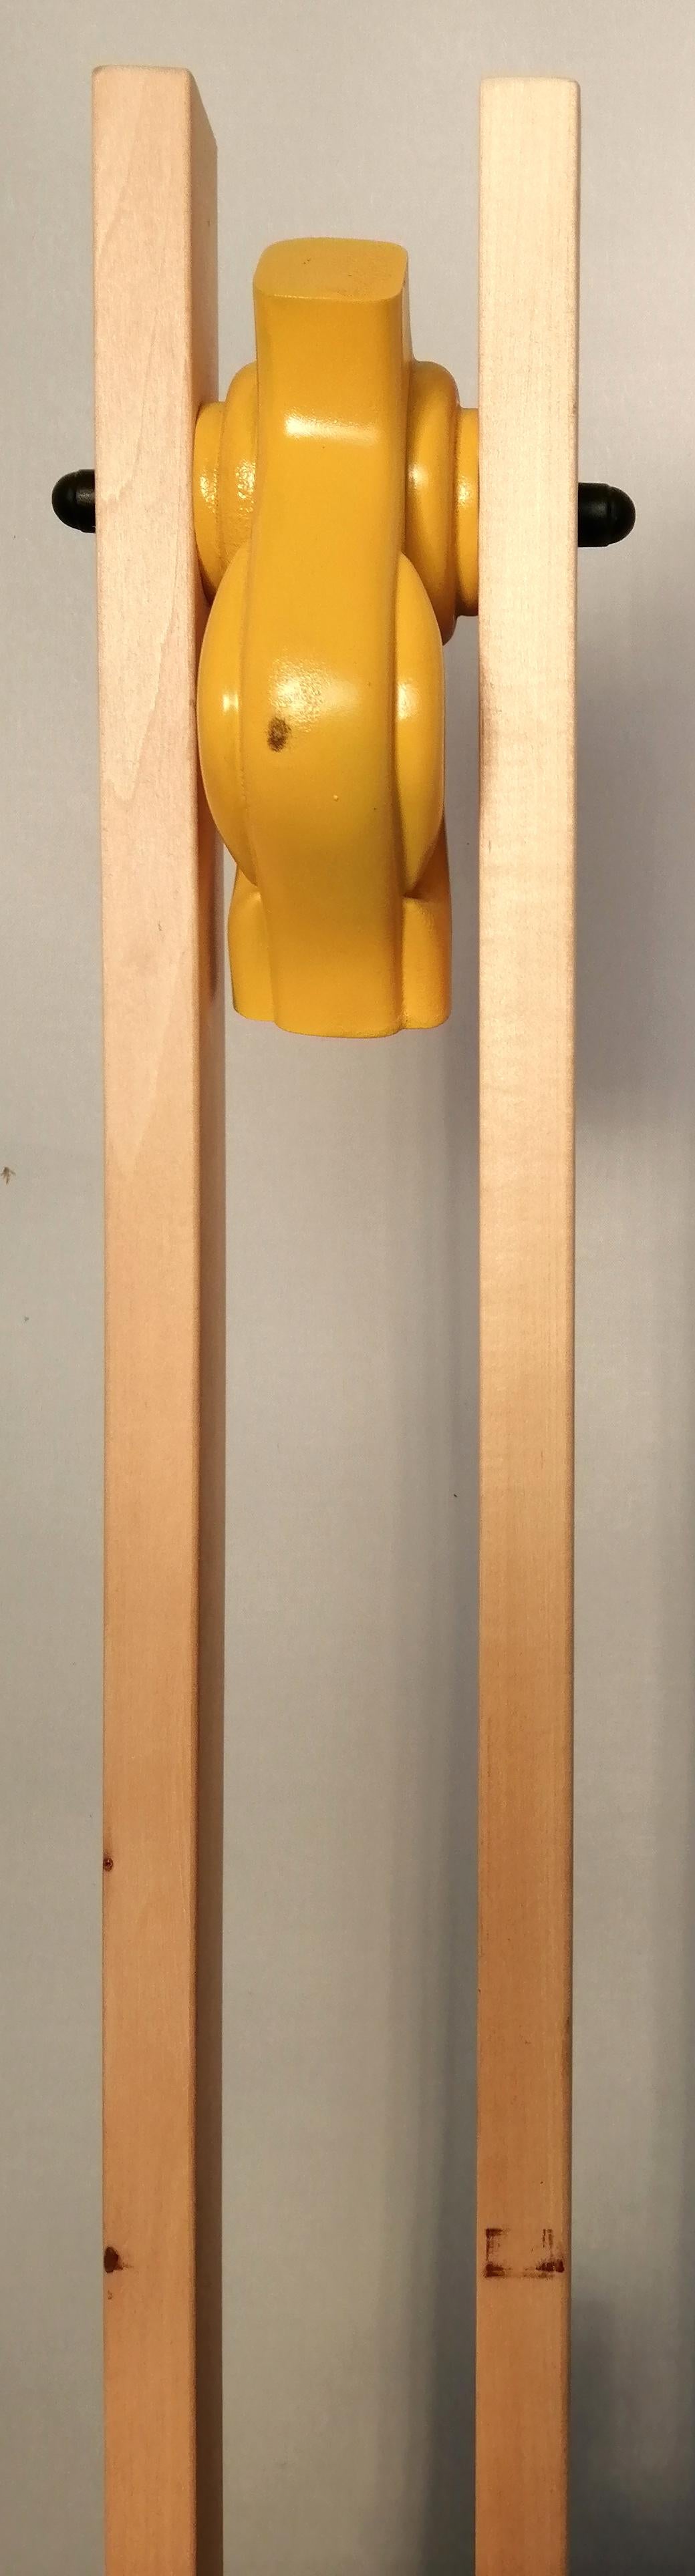 Technique de construction : structure en bois de hêtre avec décoration jaune
Couleur : bois naturel.
 